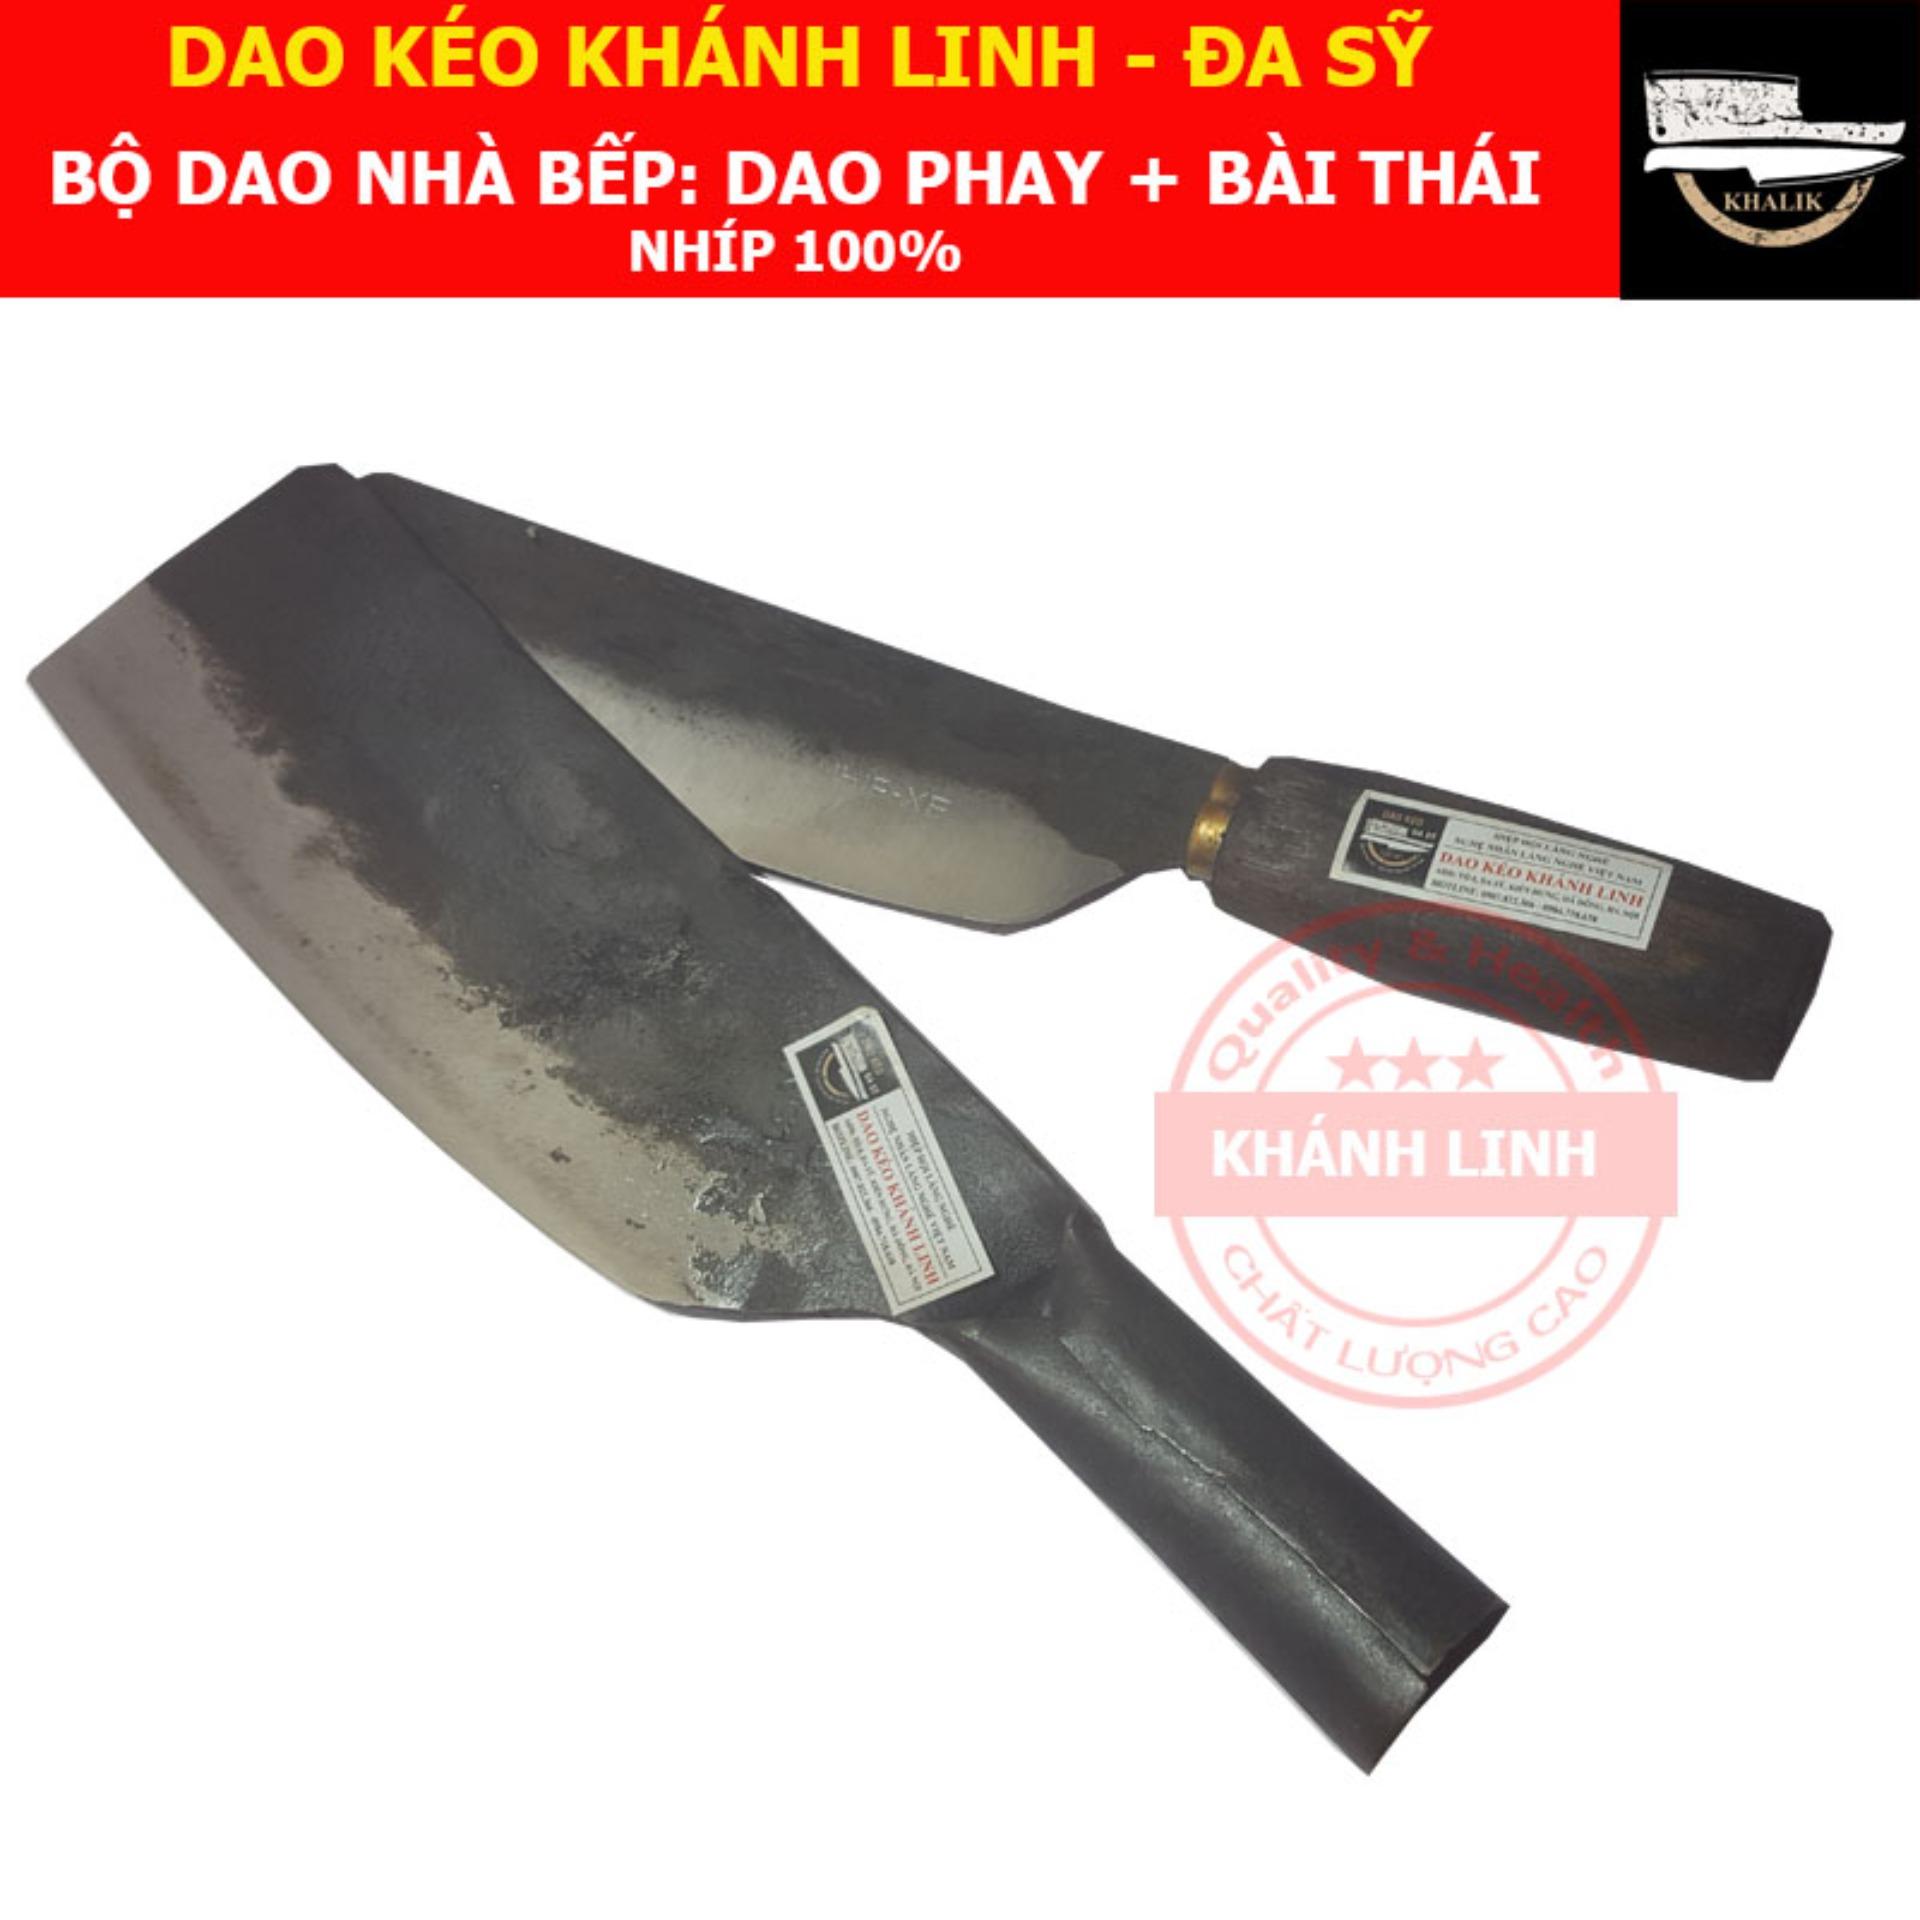 Bộ dao nhà bếp bằng NHÍP 100% Đa Sỹ - Khánh Linh: Dao phay chặt + dao bài thái (MS: CBN09)